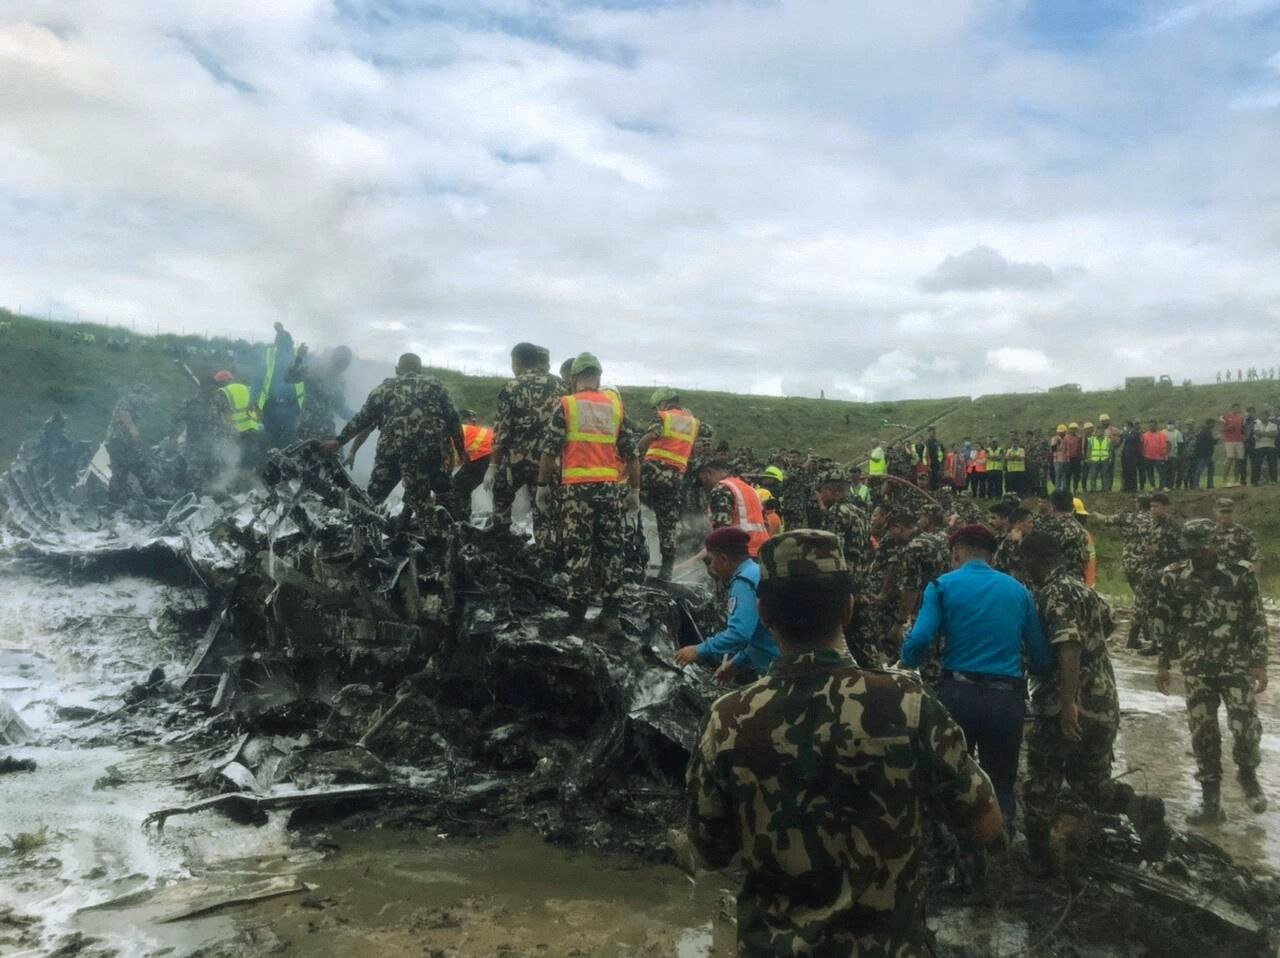 Tragic Nepal Plane Crash: 18 Dead, Pilot Sole Survivor